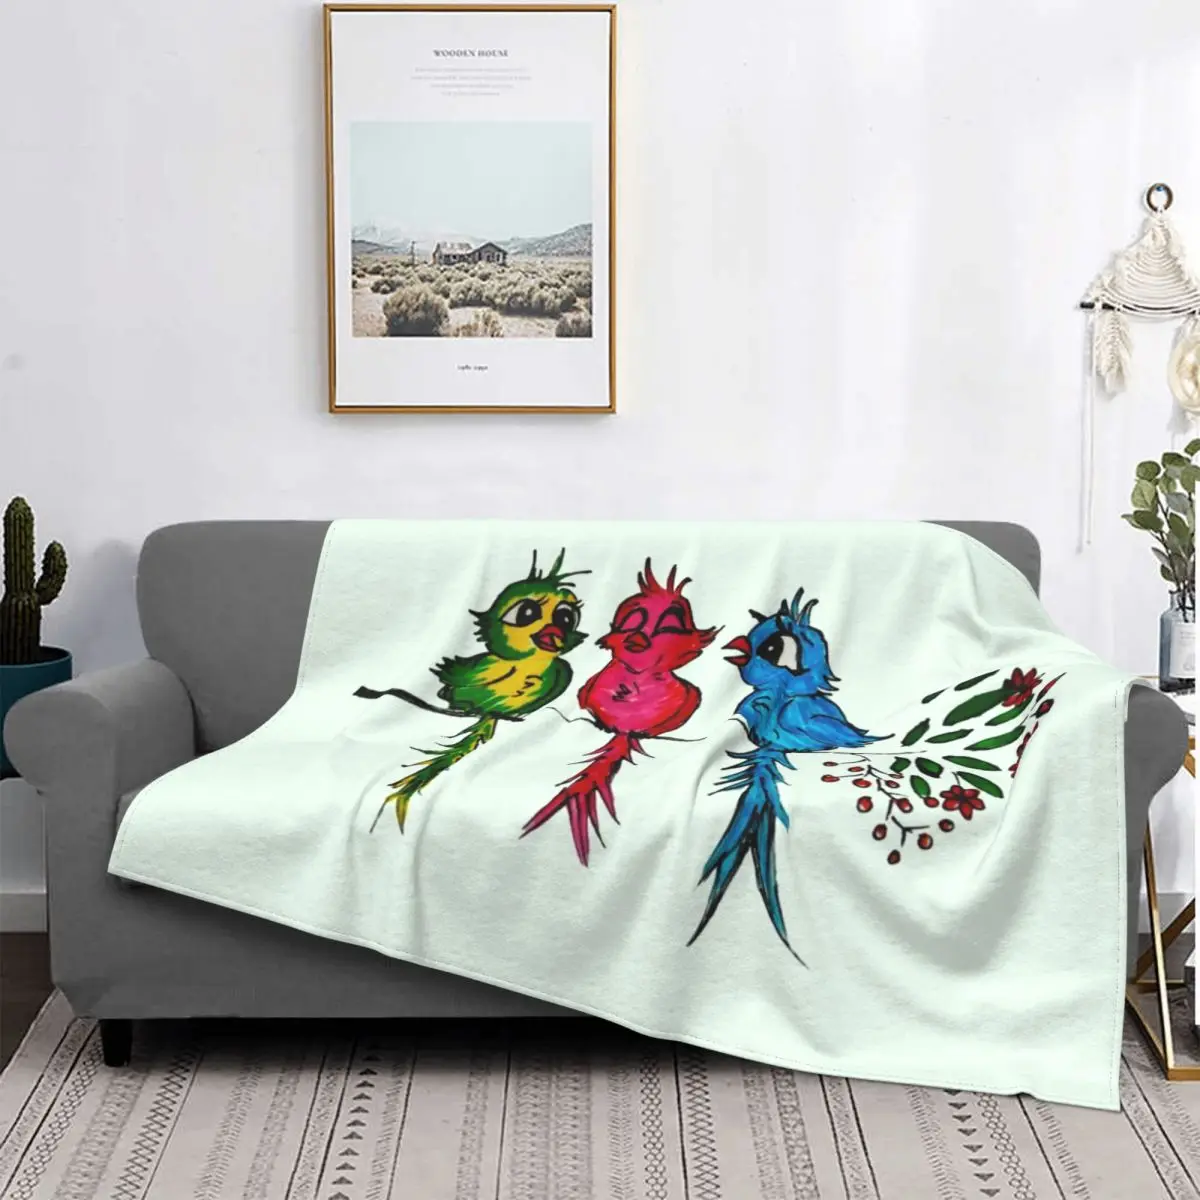 

Фланелевое Флисовое одеяло с тремя маленькими птицами Ajax, пушистое одеяло, домашнее покрывало для дивана, спальни, постельное белье, подаро...